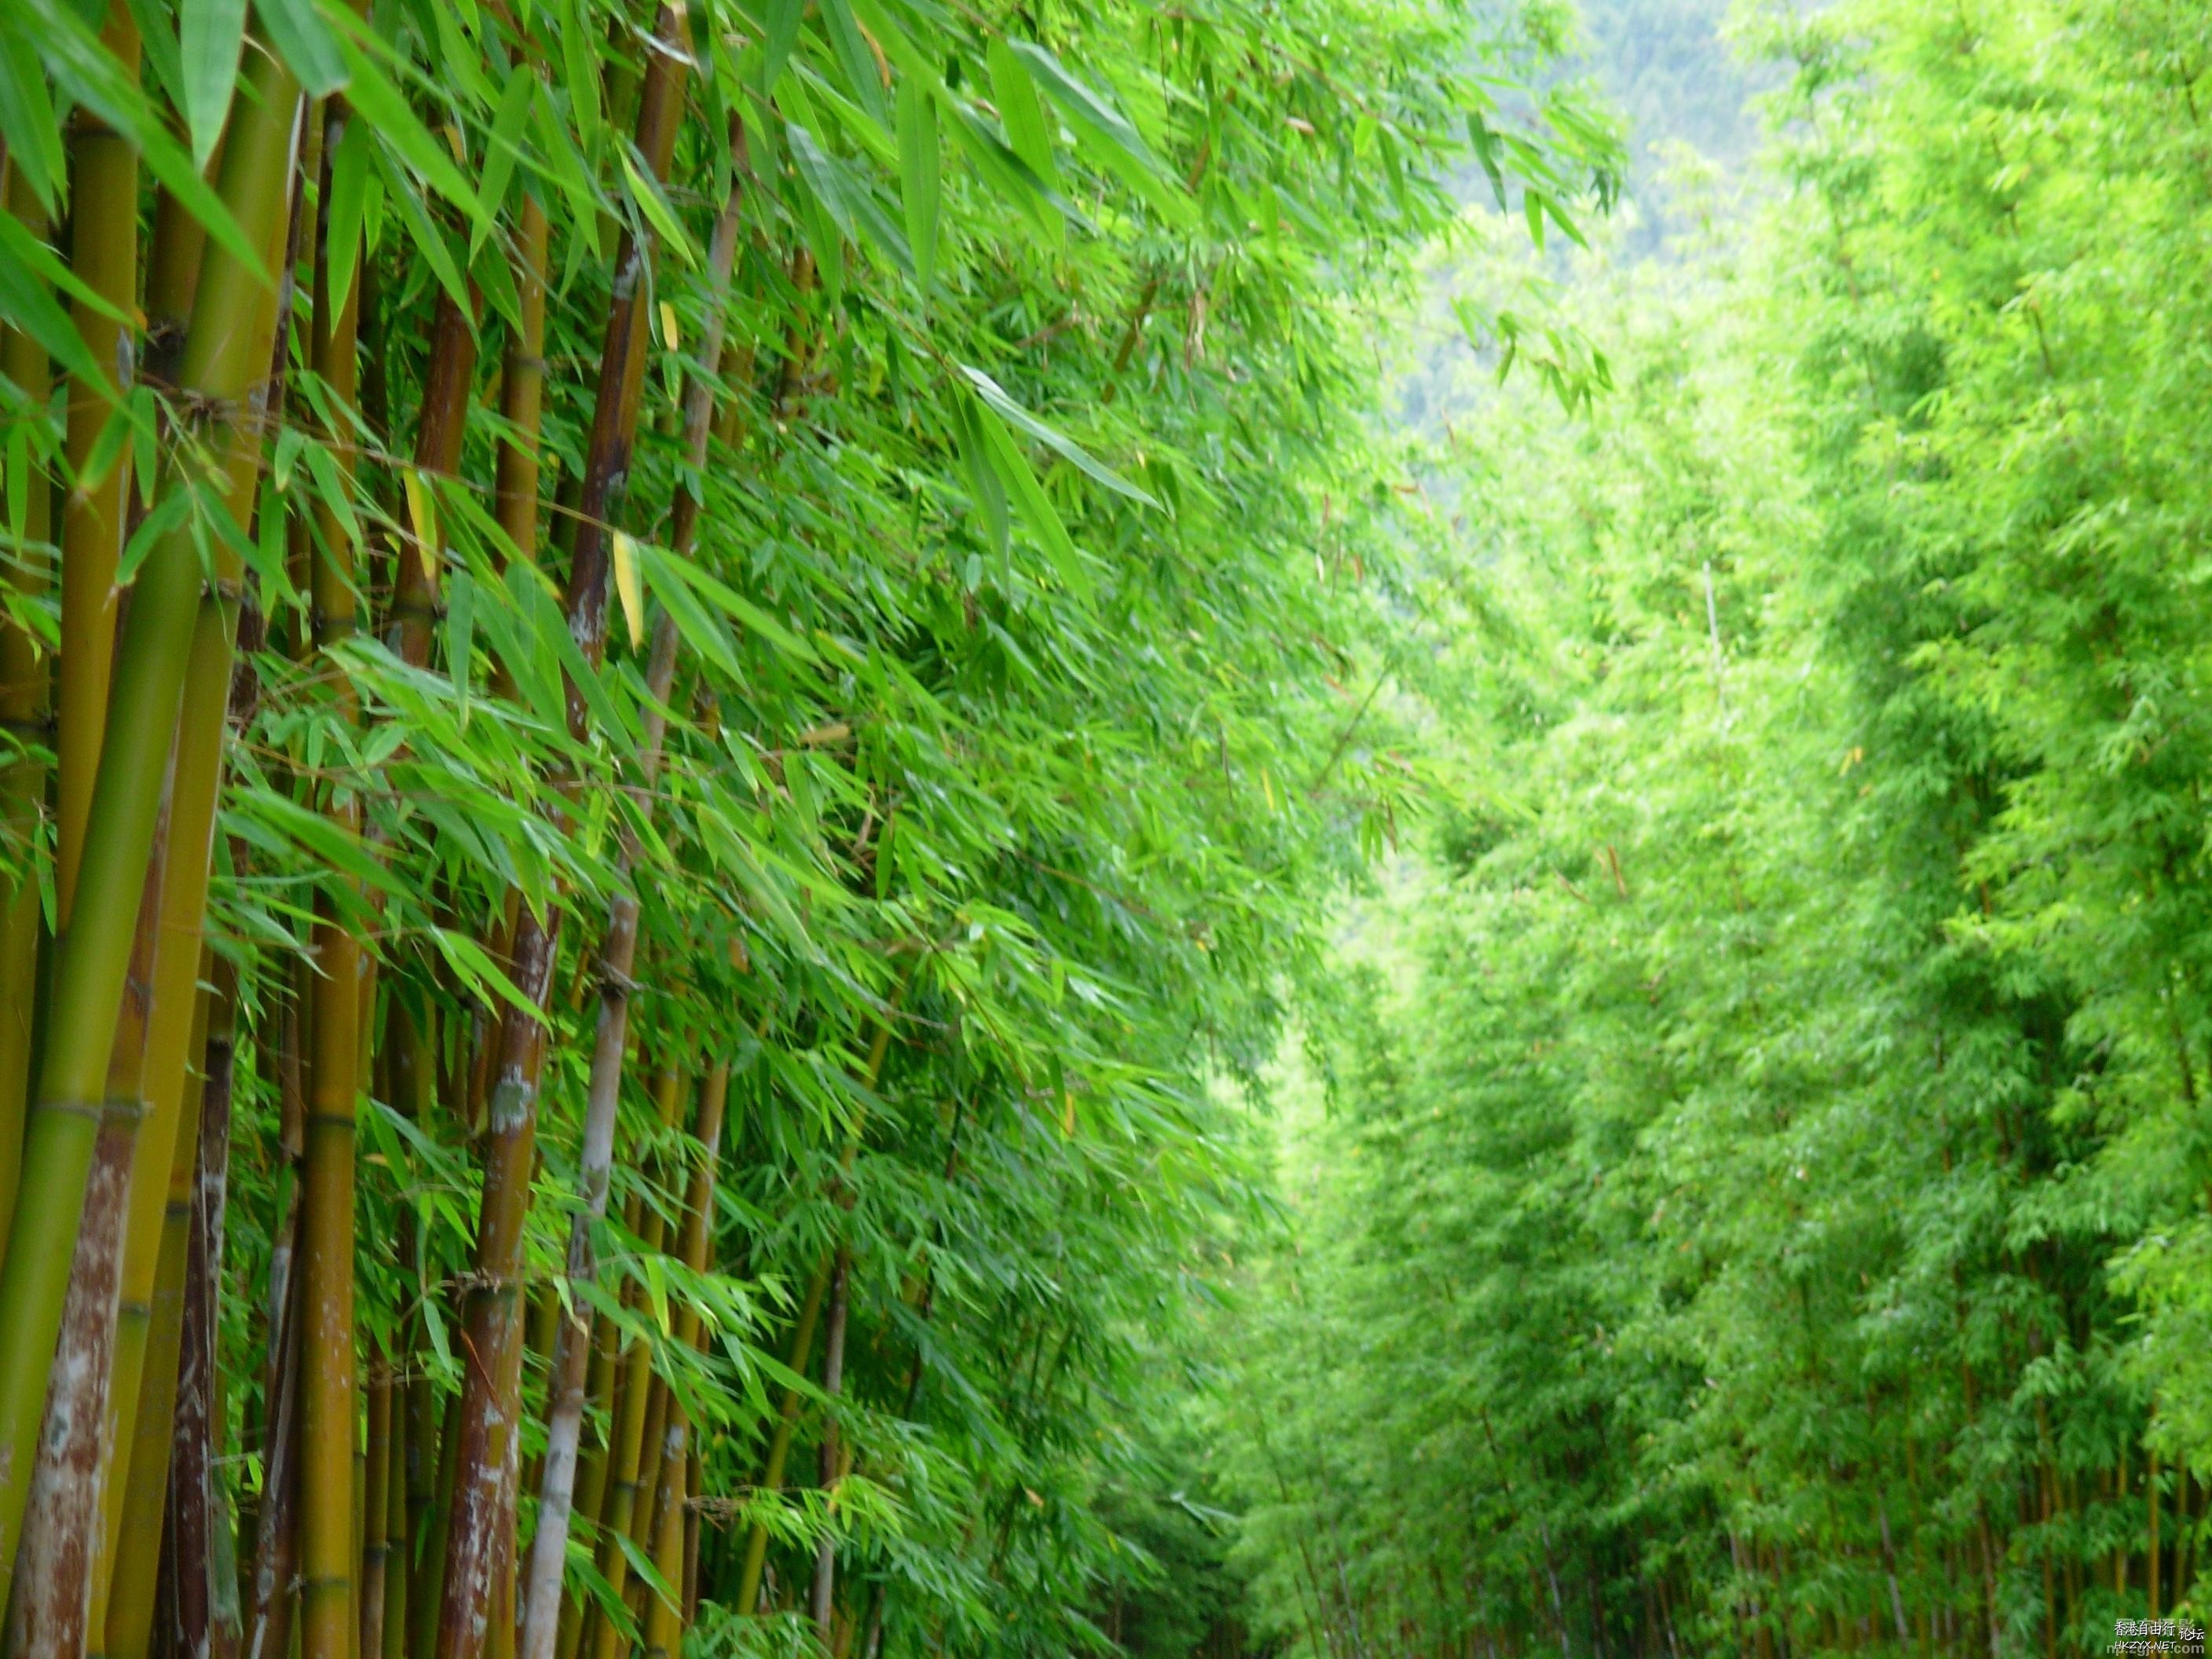 竹海情深-大片的竹林  貼上 精華分享